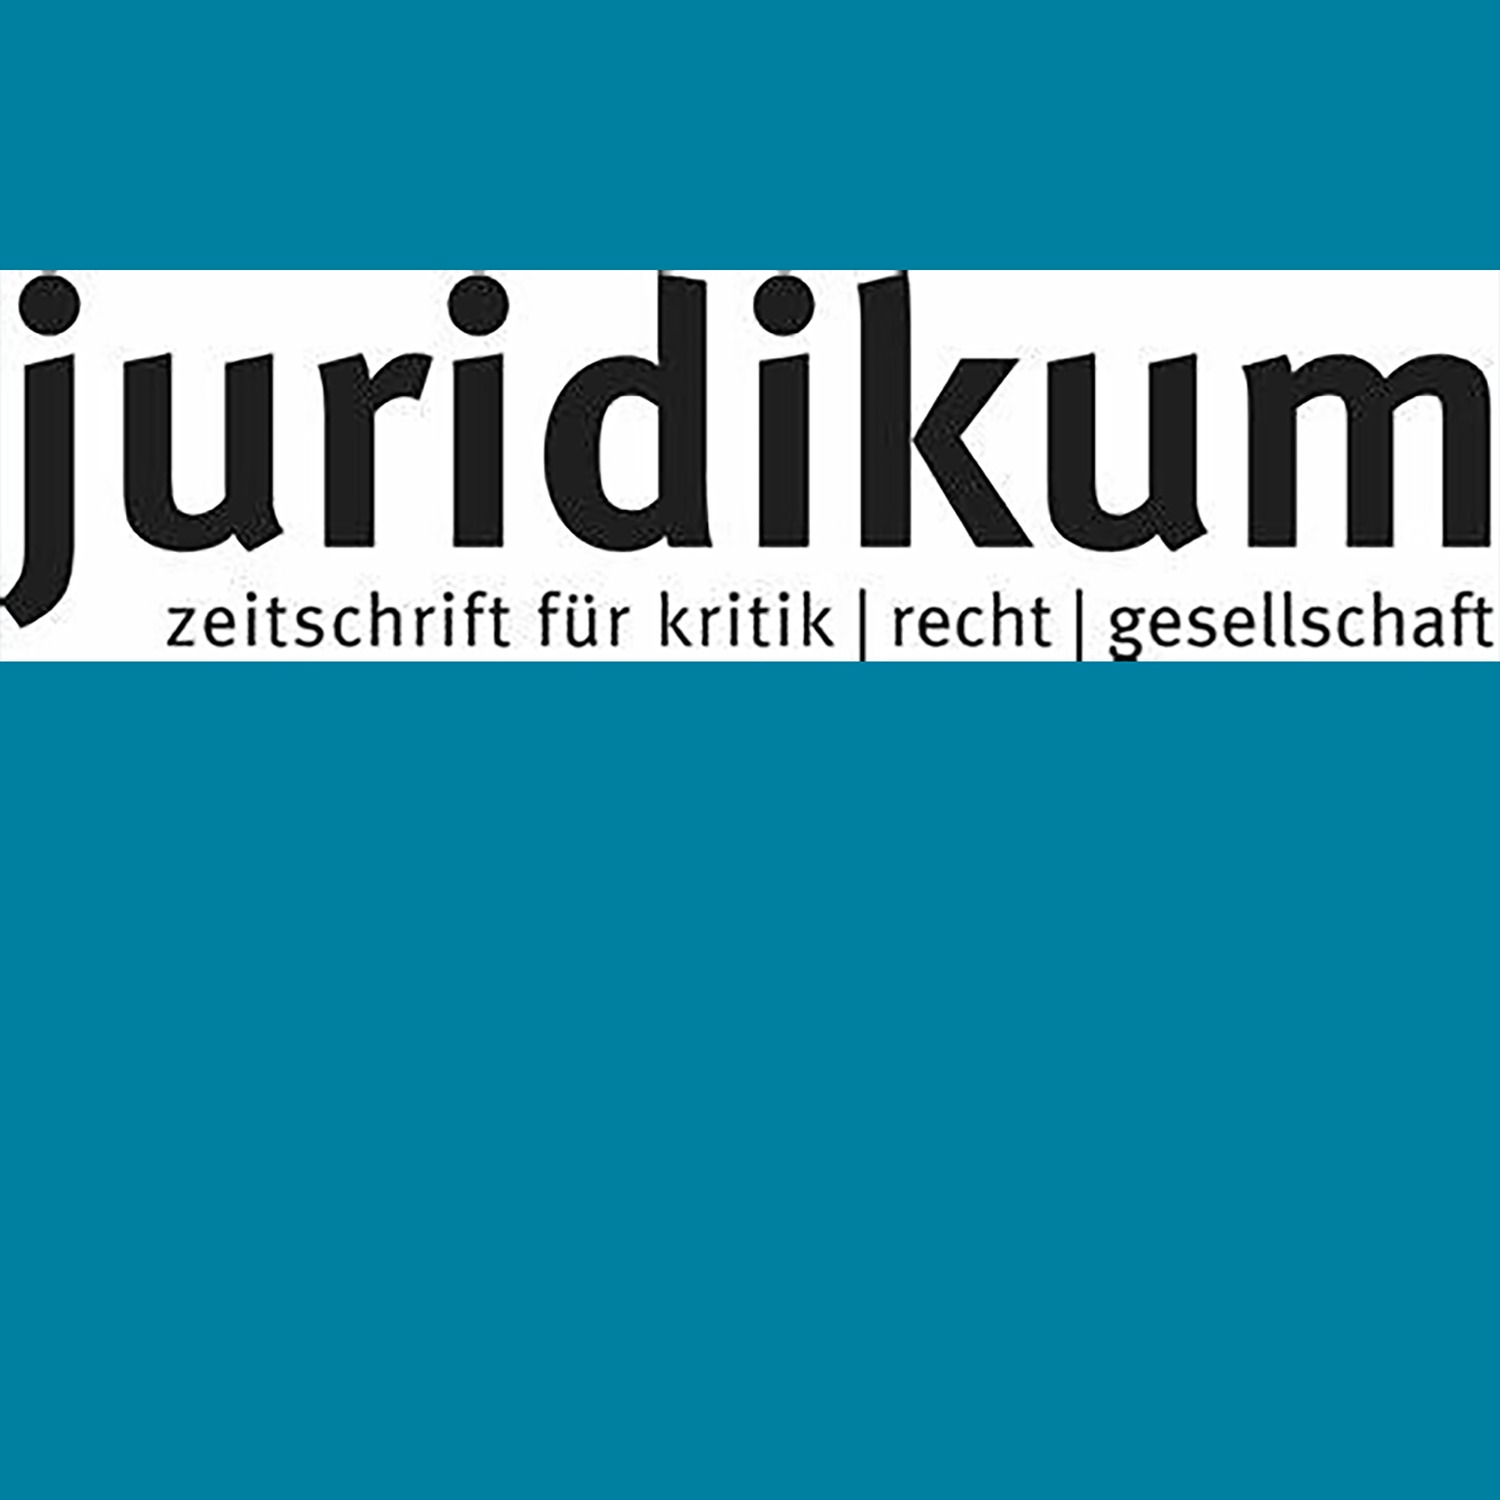 Just published – Menschenrechtliche Sorgfaltspflichten für die Textilindustrie – europäische oder österreichische Regelungskompetenz?